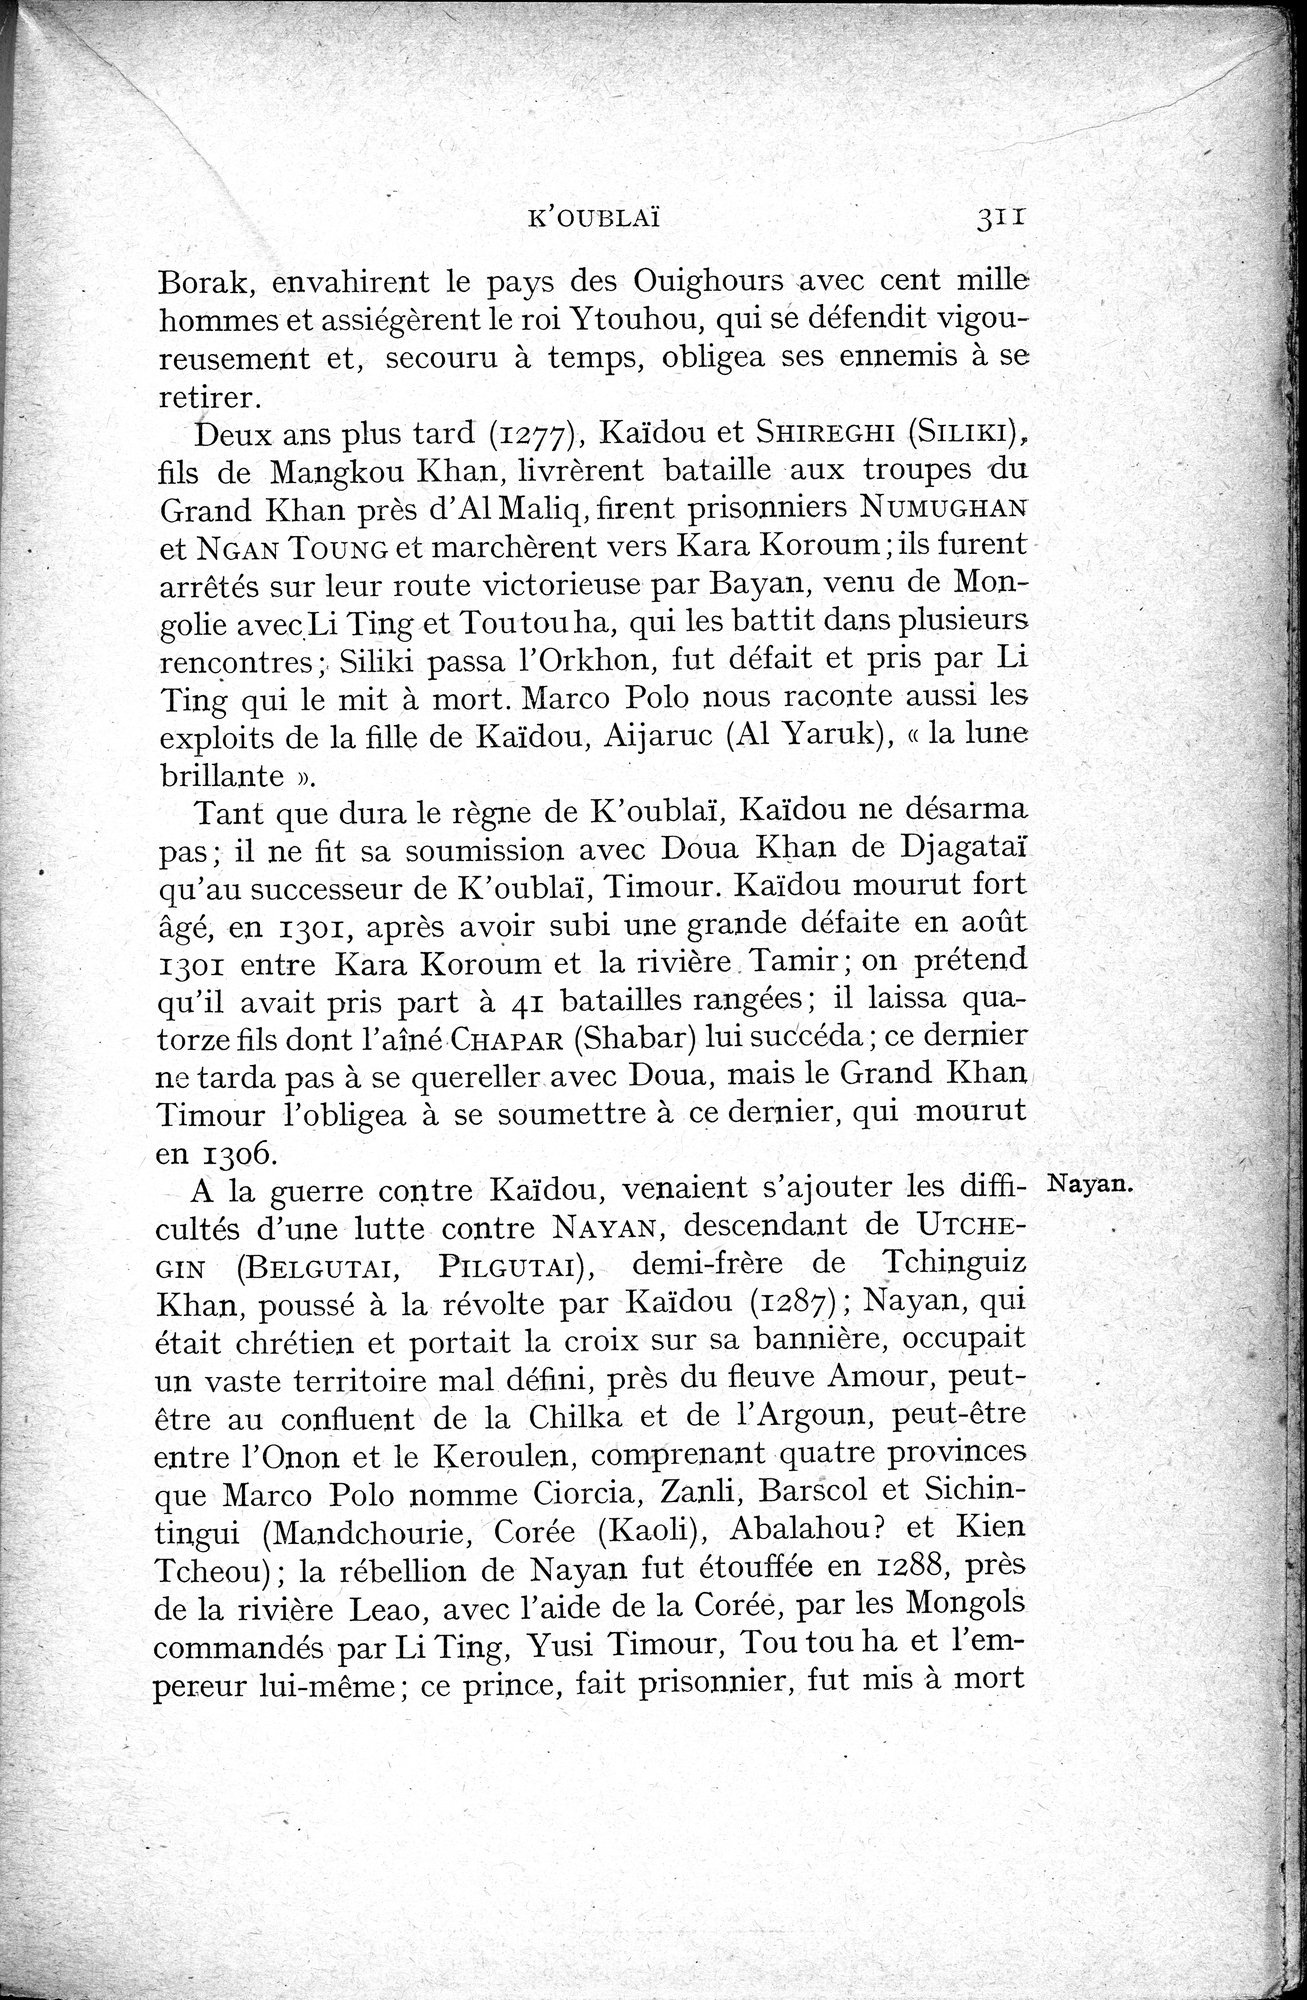 Histoire Générale de la Chine : vol.2 / Page 313 (Grayscale High Resolution Image)